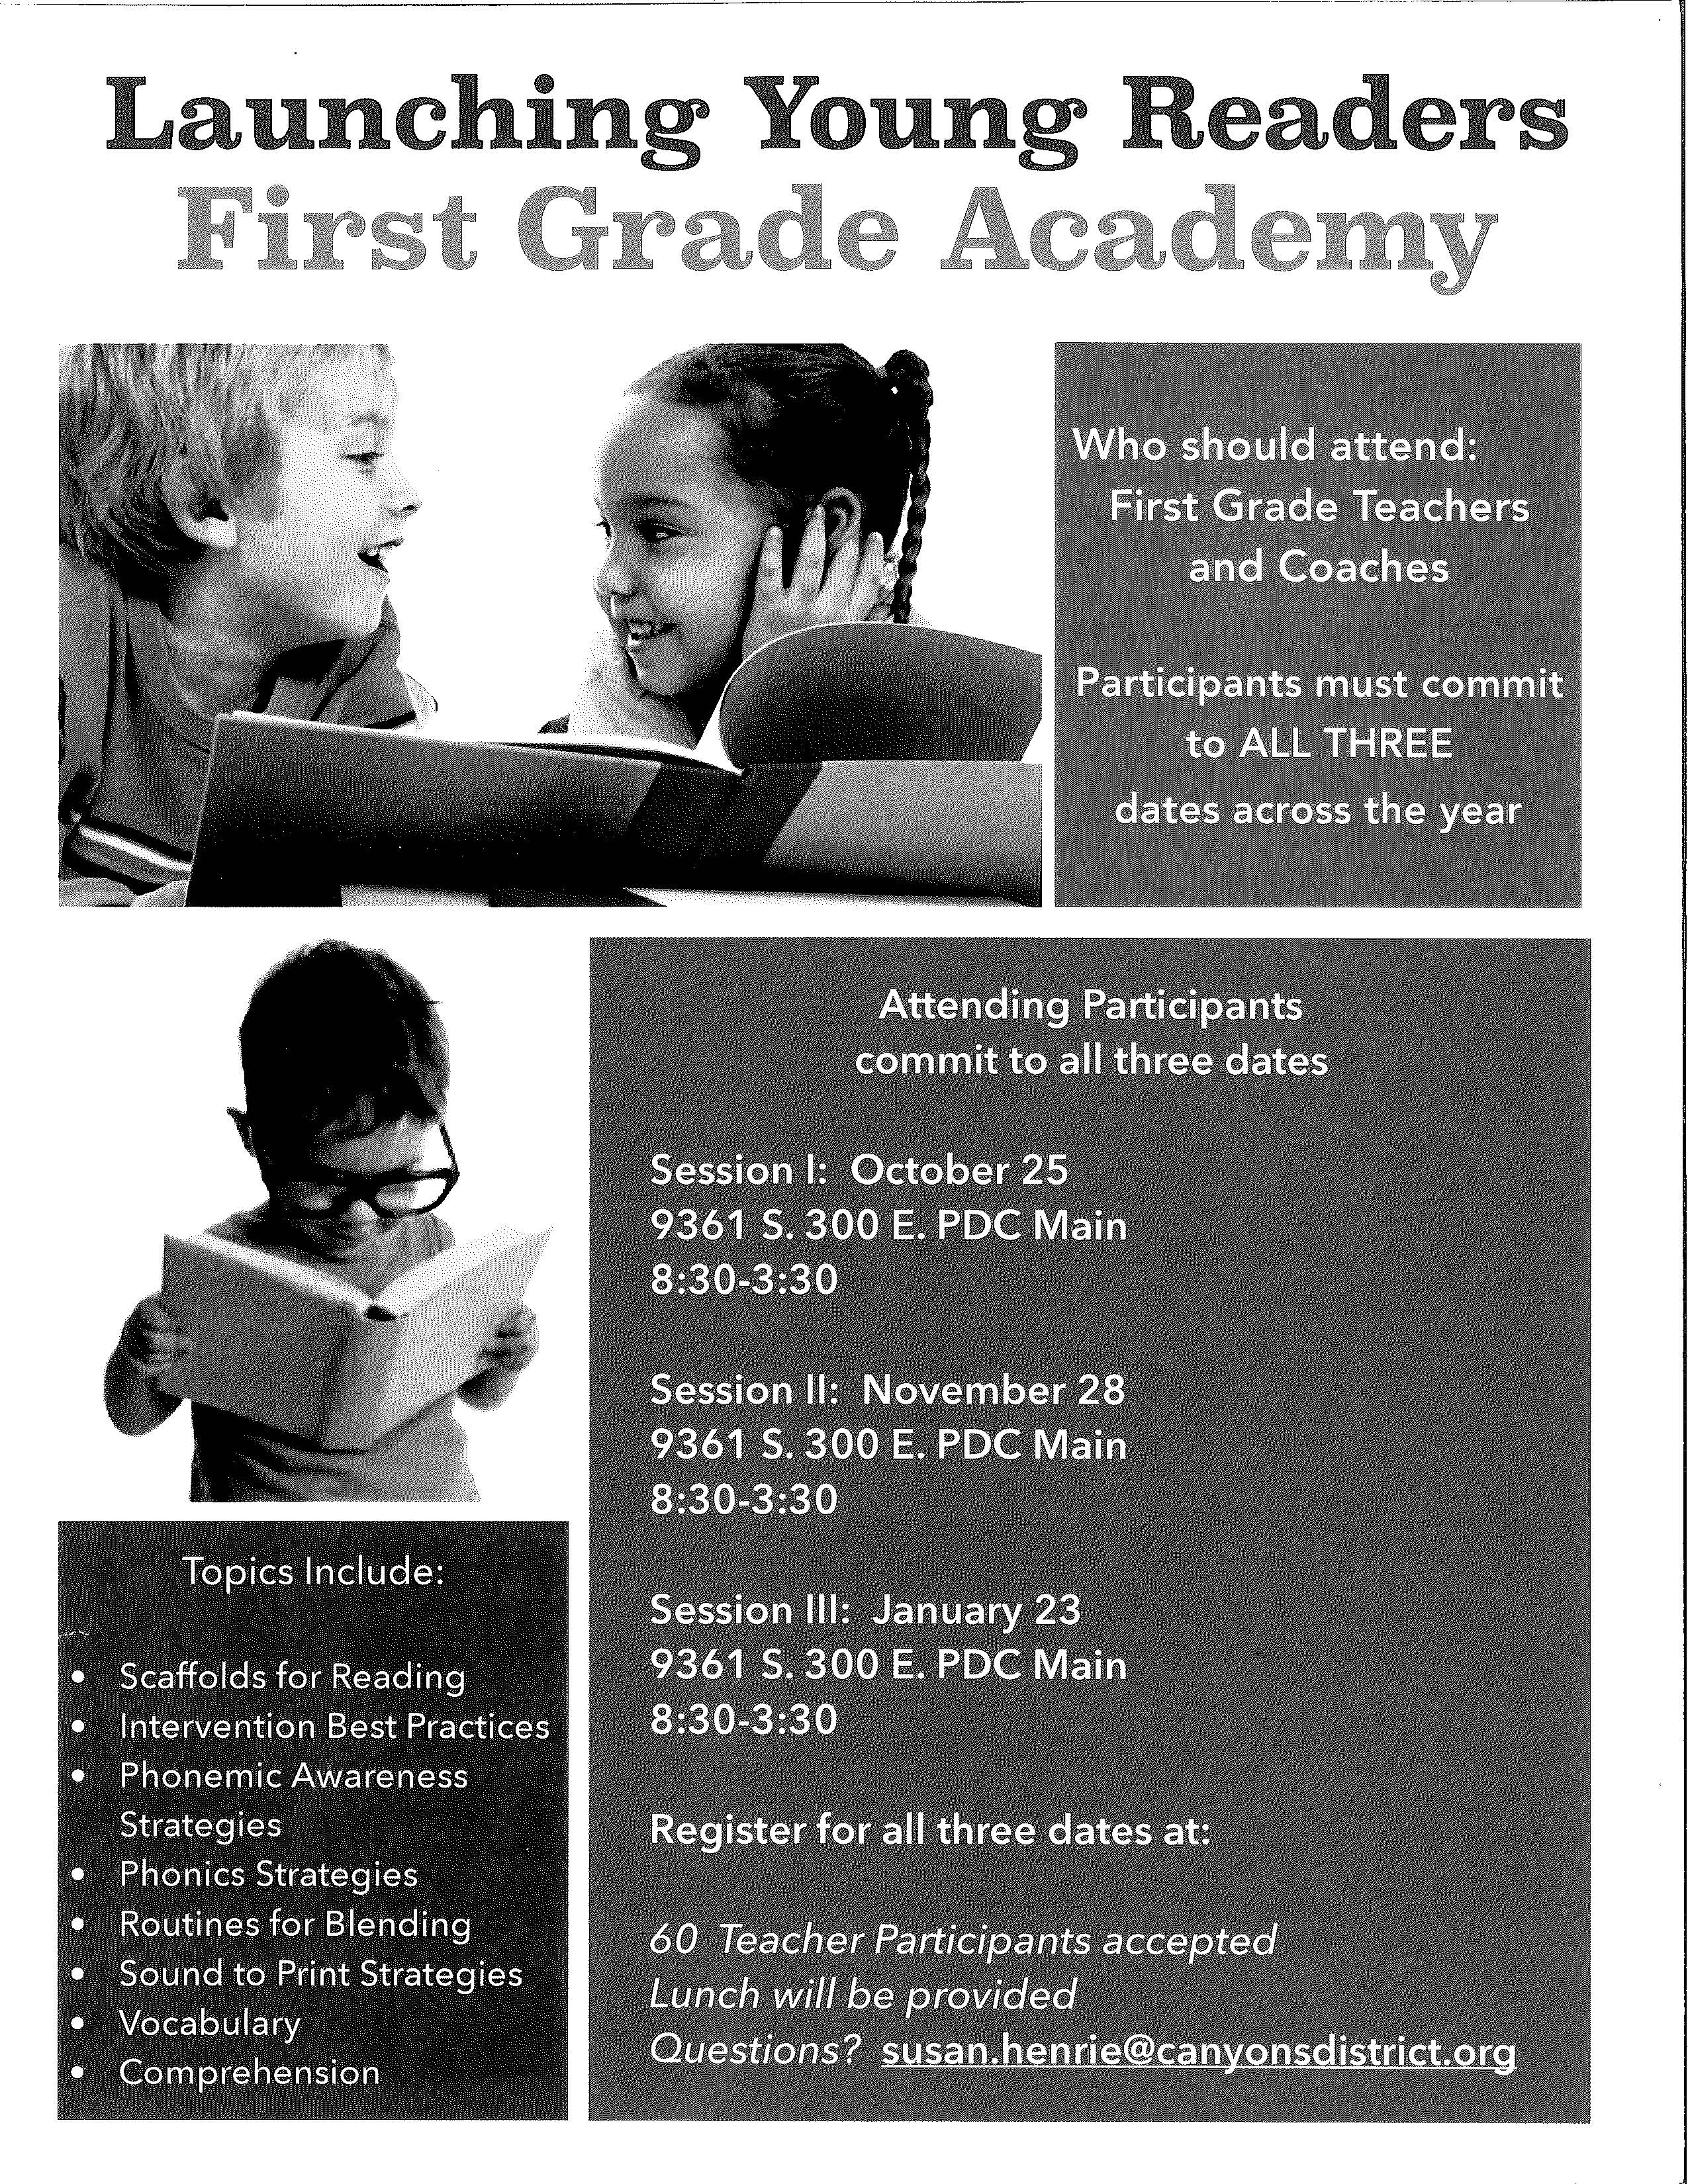 First Grade Academy Flyer 2.jpg